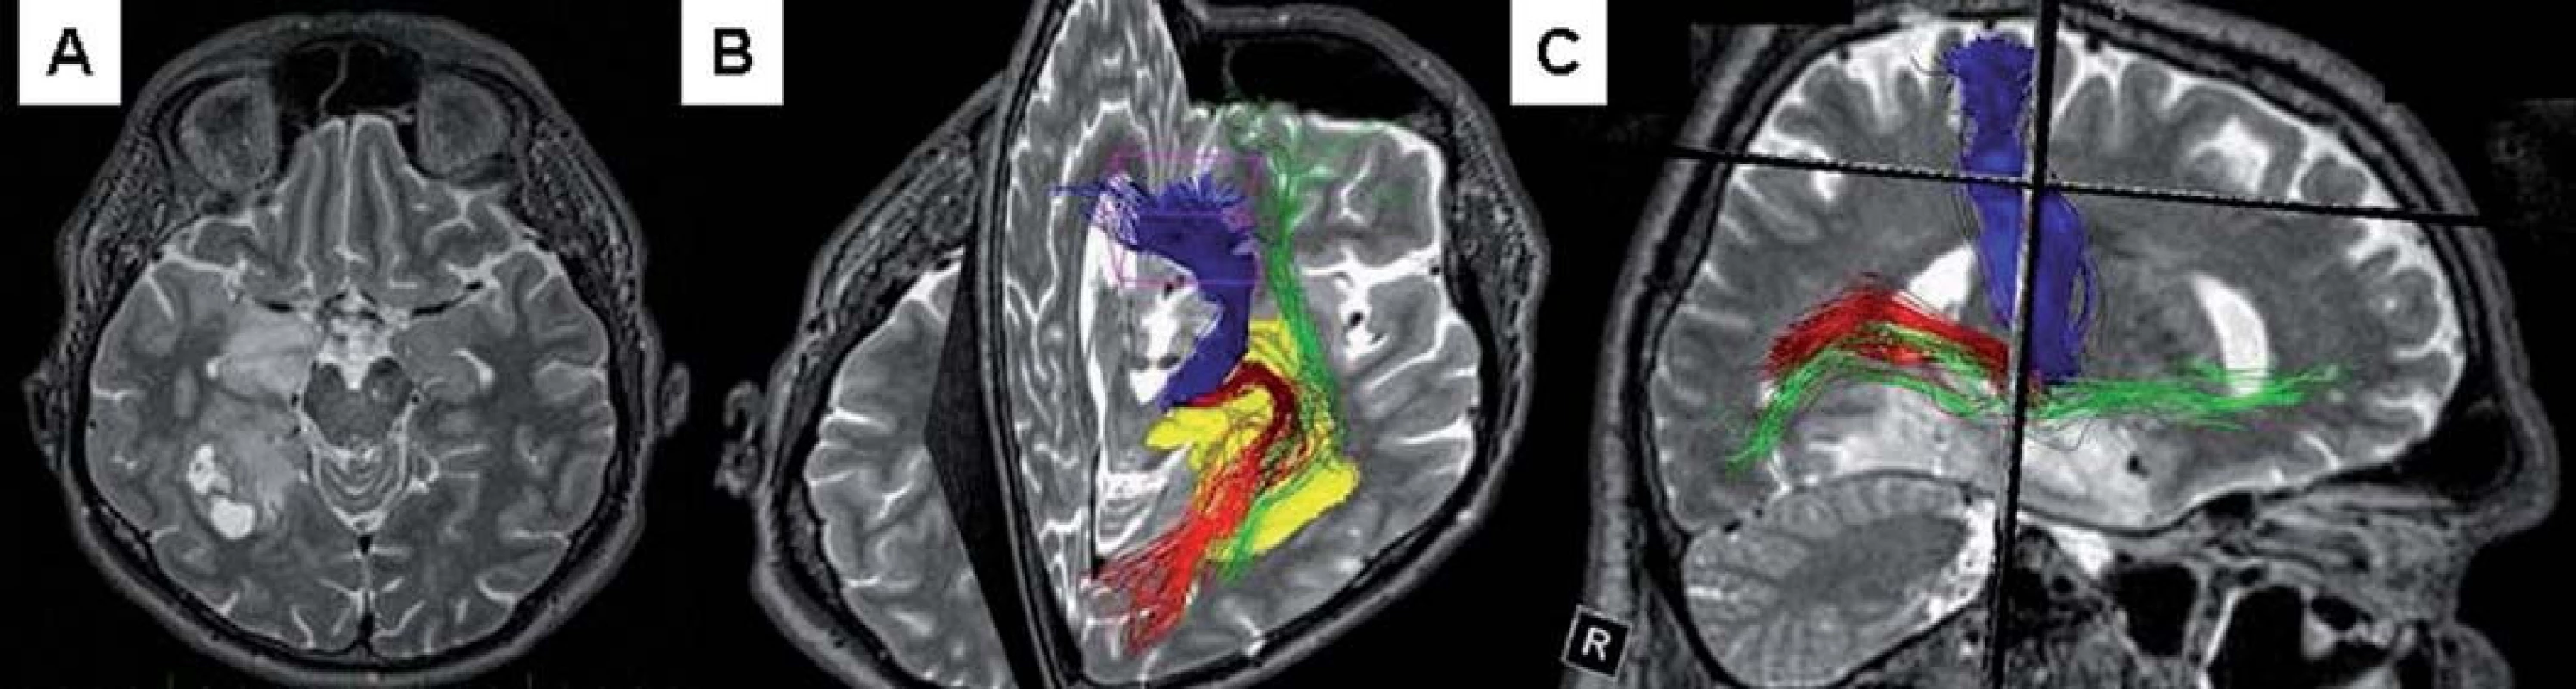 Předoperační grafické zobrazení.
Obr. 2a) MR T2W – gliom celé délky mediobazálního temporálního komplexu vpravo, zadní část ohraničená cystami.
Obr. 2b) Předoperační traktografie; modře – pyramidová dráha, červeně – optická radiace, zeleně – fasciculus occipito-frontalis, žlutý – tumor.
Obr. 2c) Sagitální pohled na vztah tumoru k výše uvedeným drahám.